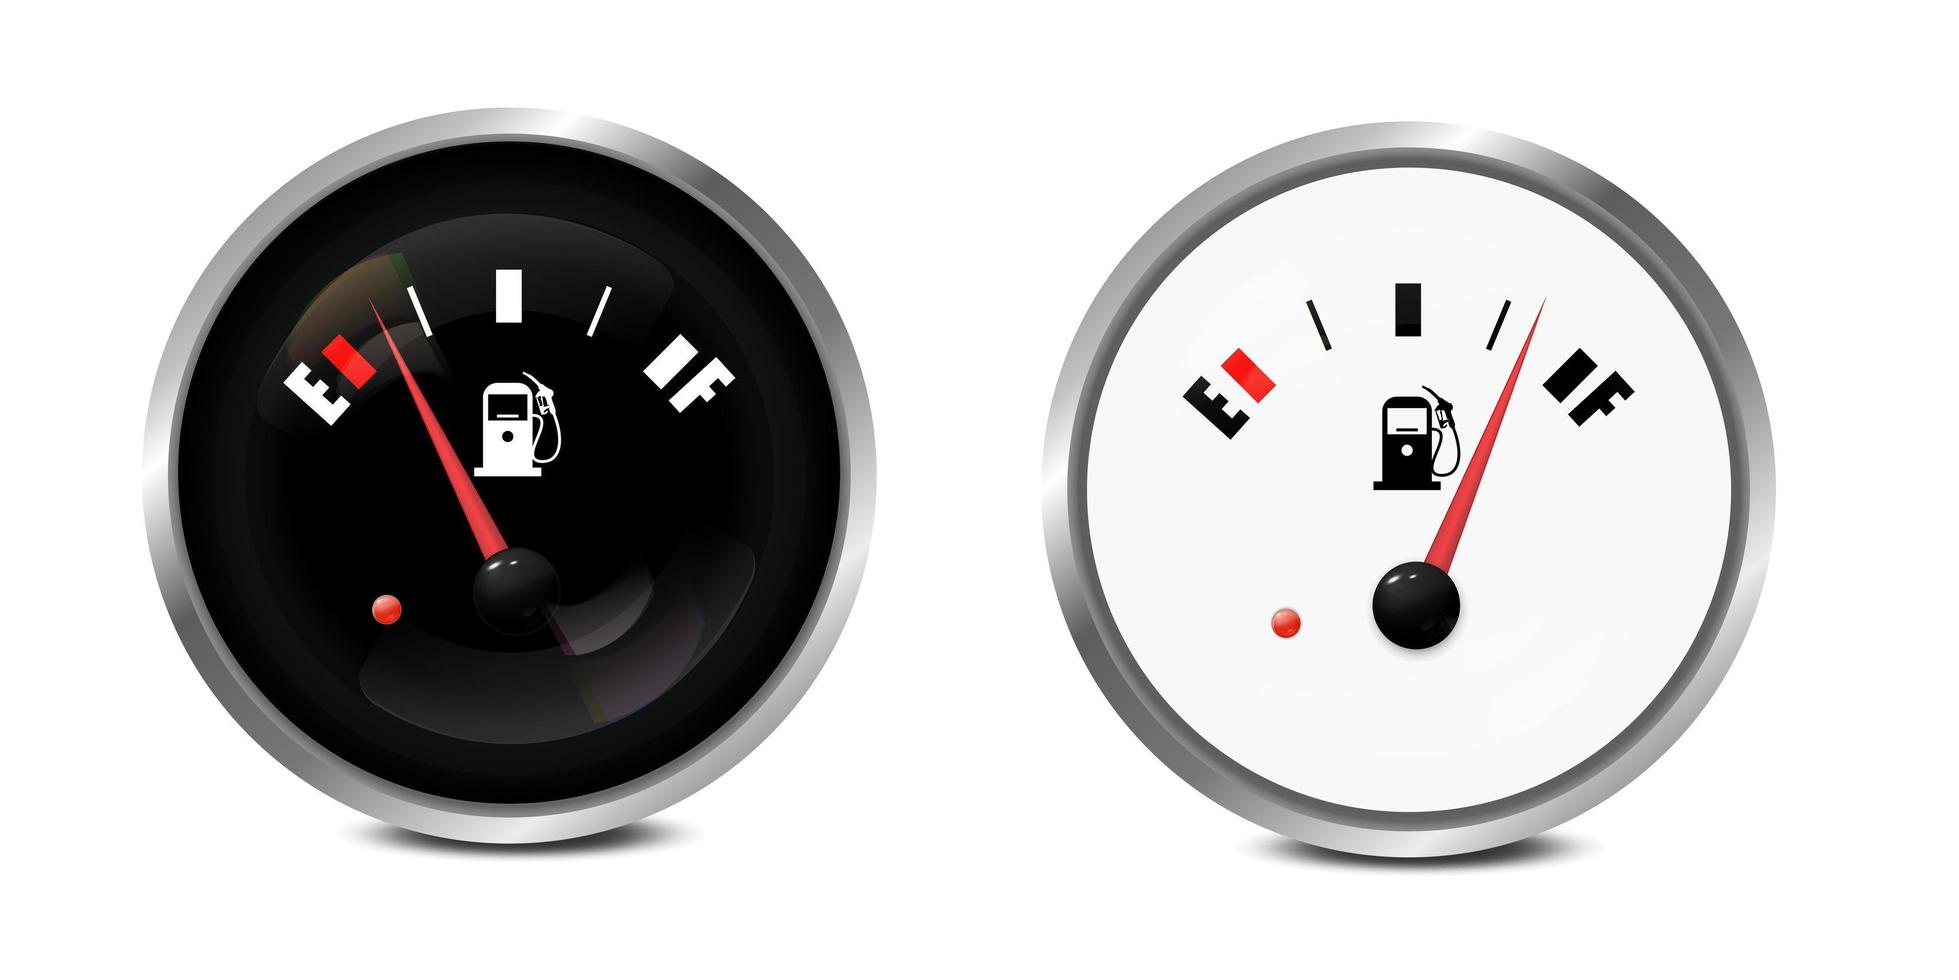 vetor 3d realista círculo preto e branco medidor do tanque de combustível de gás, conjunto de ícones da barra de nível de óleo isolado no fundo branco. detalhes do painel do carro. indicador de combustível, medidor de gás, sensor. modelo de design